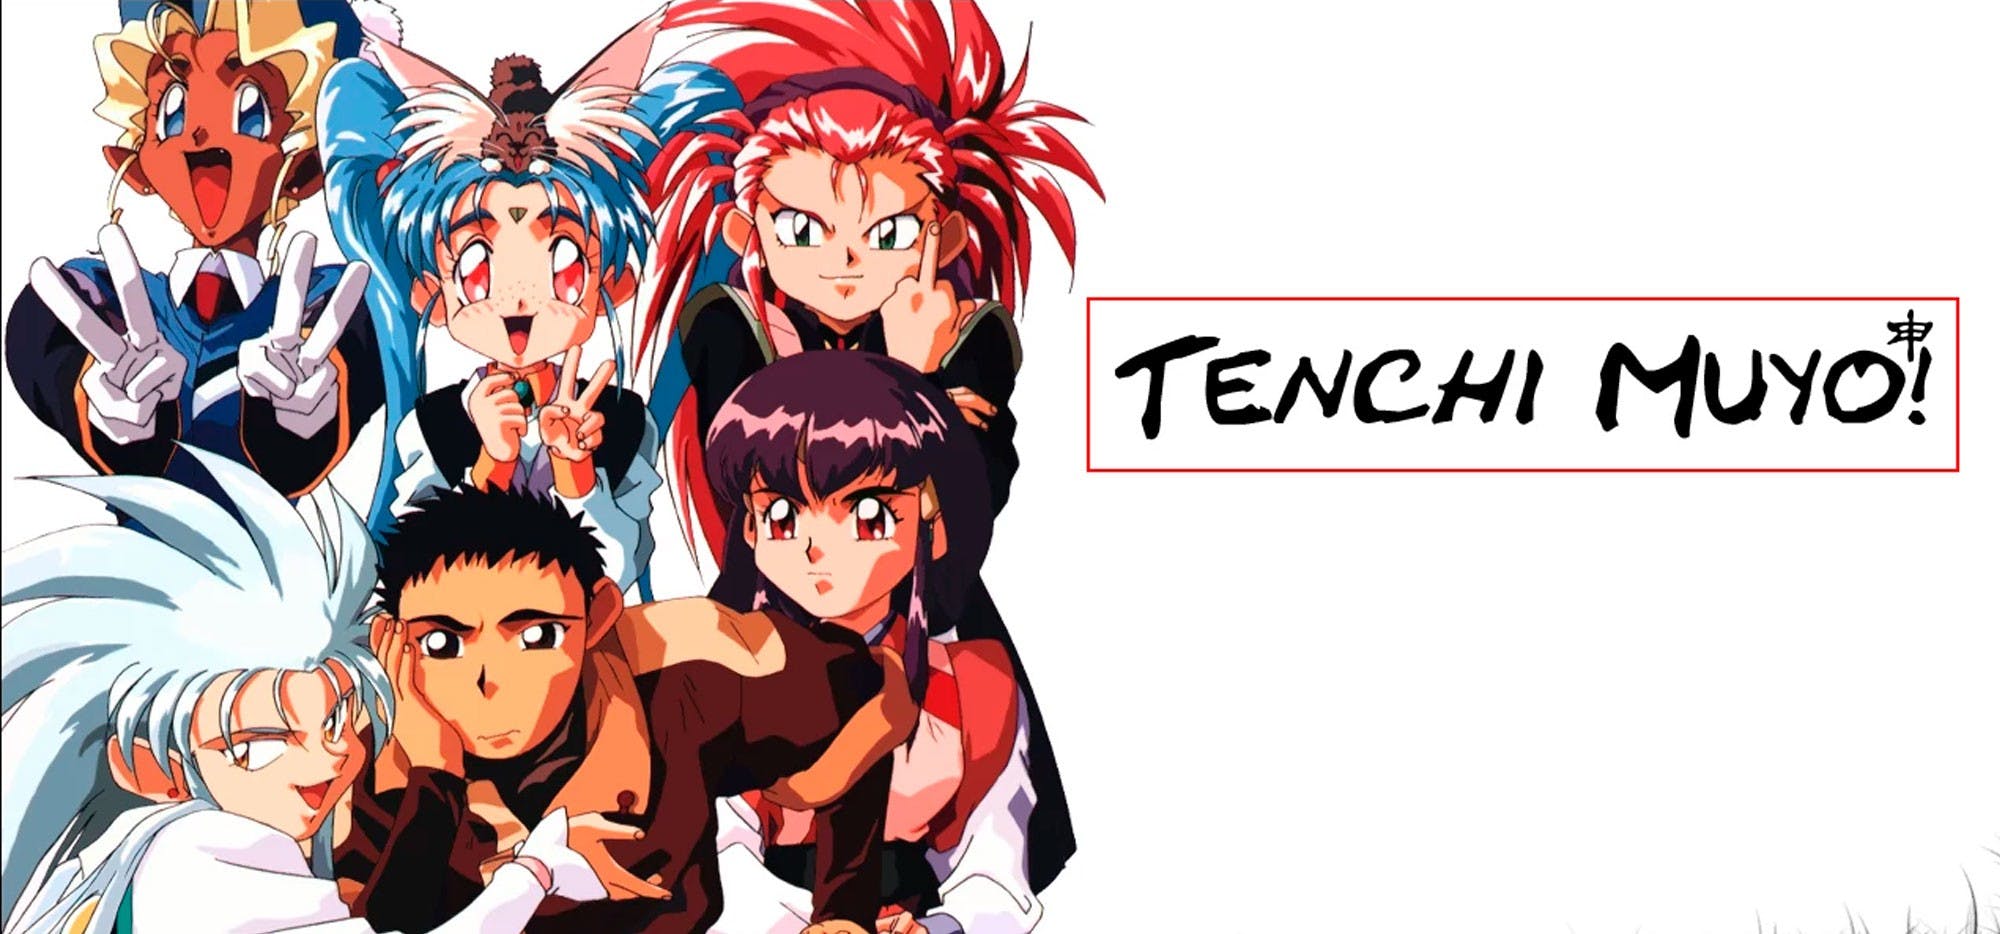 Saldrá en descuento el Blu-ray de Tenchi Muyou!  por su 25th aniversario